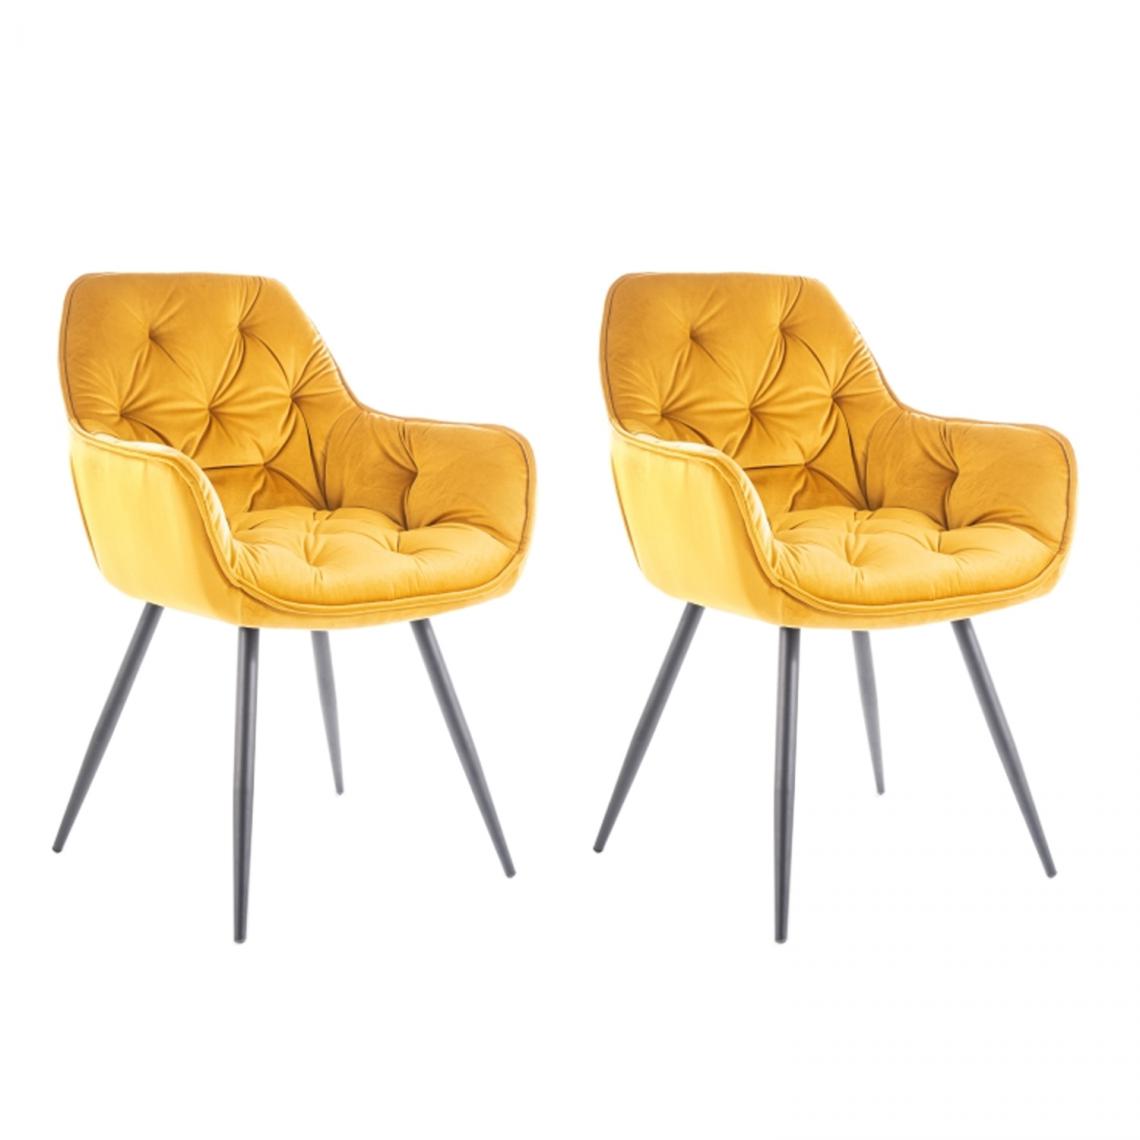 Hucoco - CHERLY - Lot de 2 chaises avec accoudoirs style glamour - 83x45x44cm - Velours + Pieds en métal - Jaune - Chaises